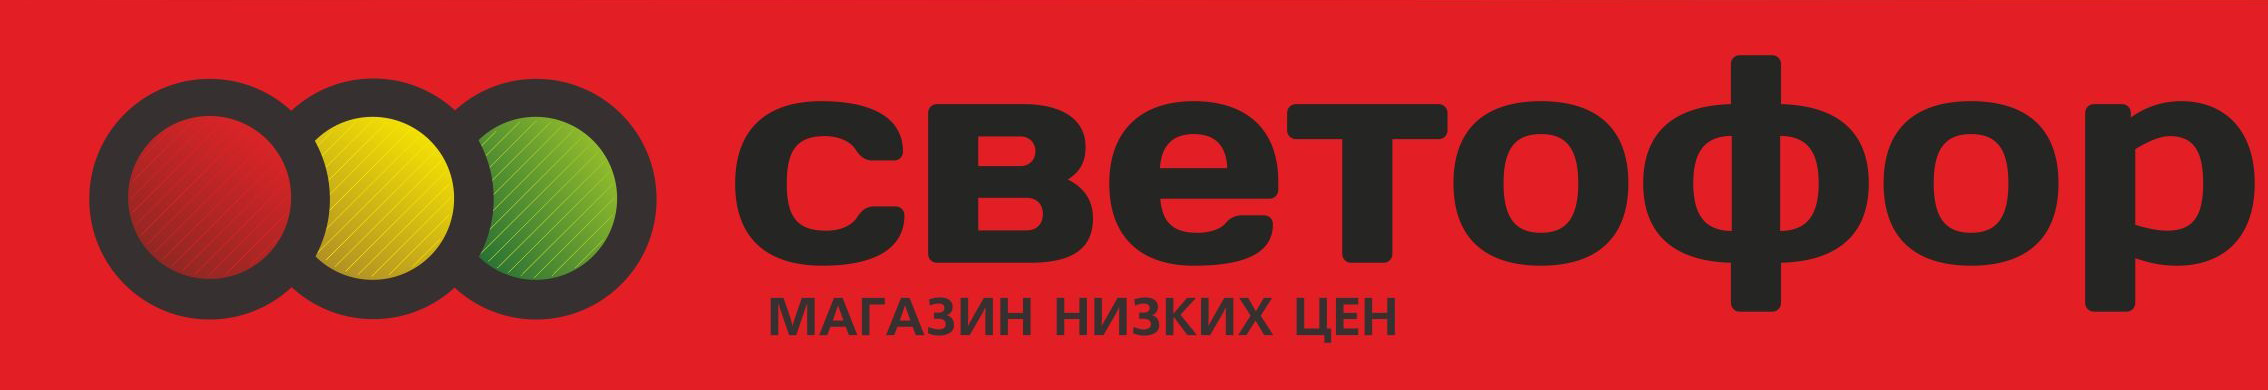 Магазин низких цен "Светофор", официальный сайт